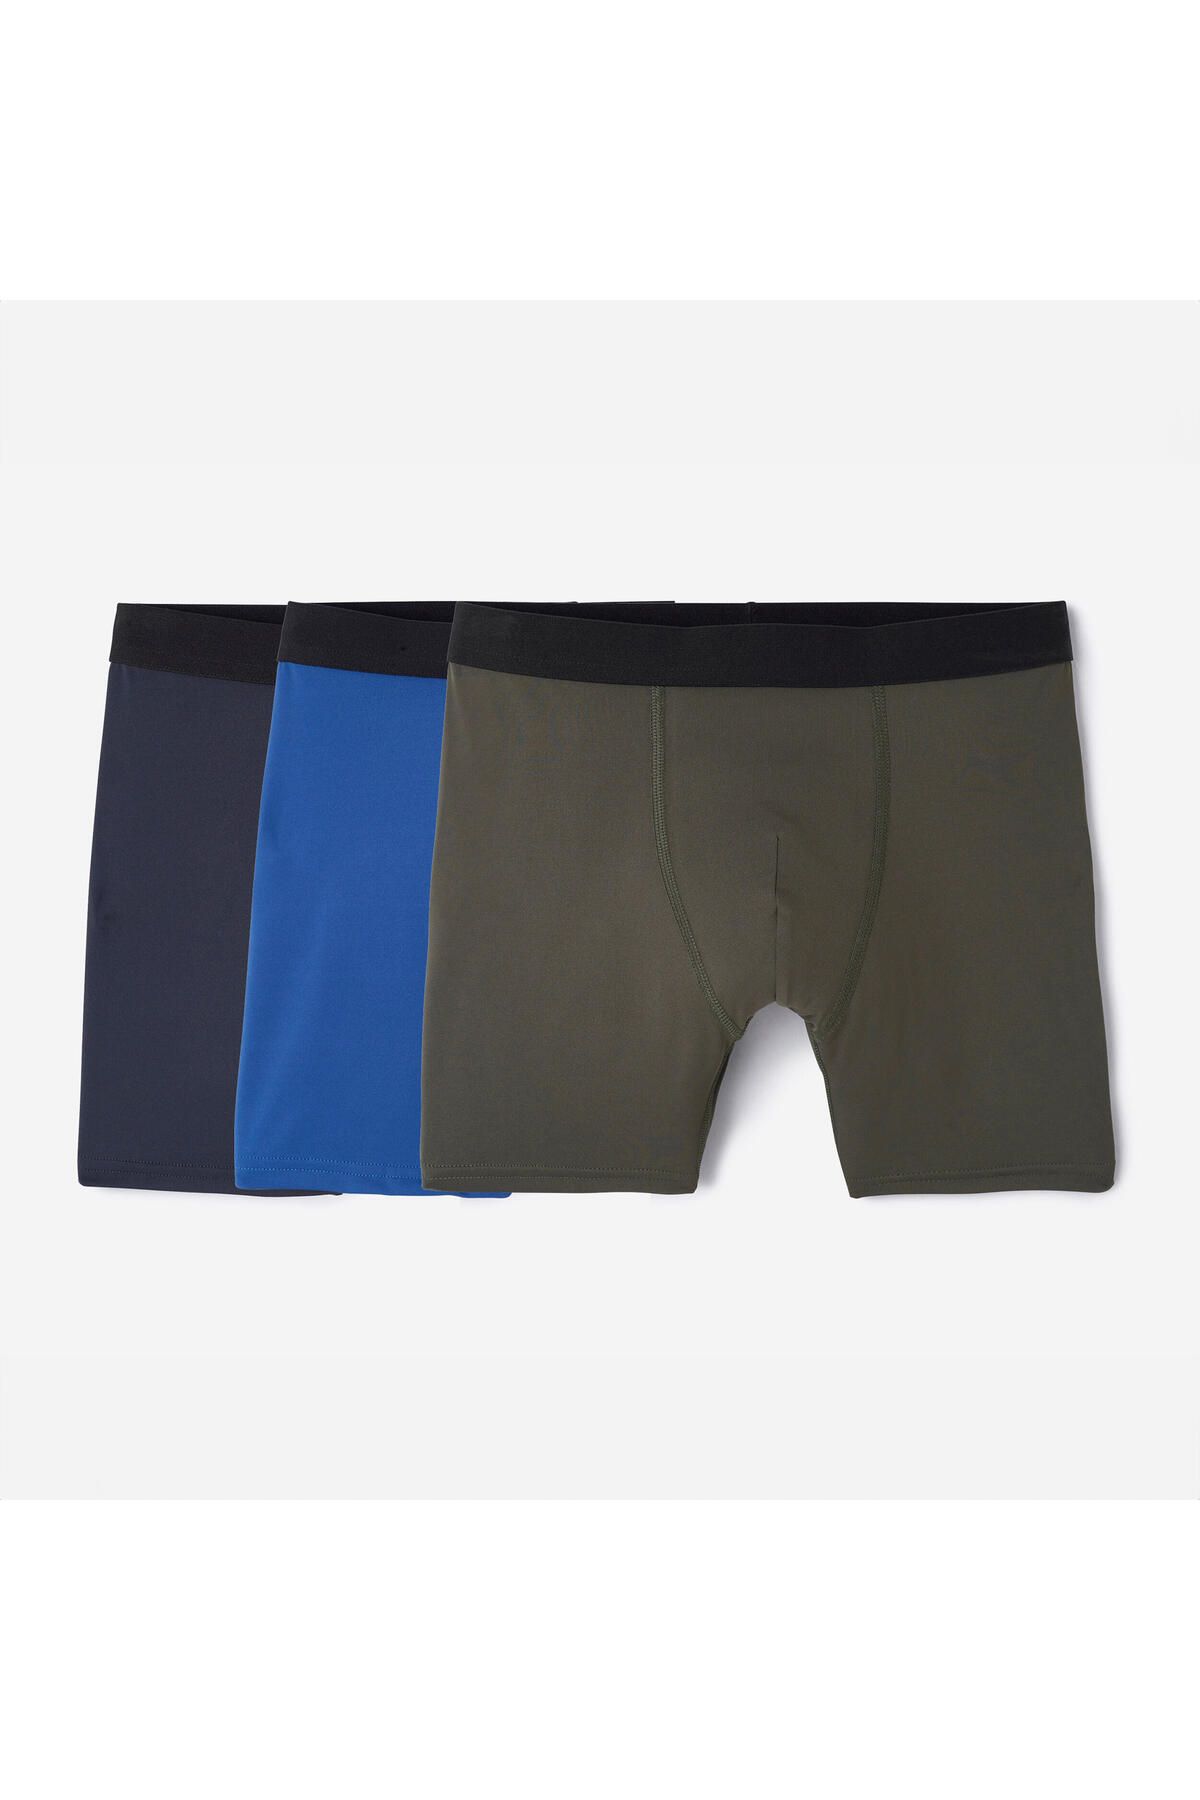 Decathlon Erkek Boxer - Koyu Mavi/Mavi/Haki - 3'lü Paket